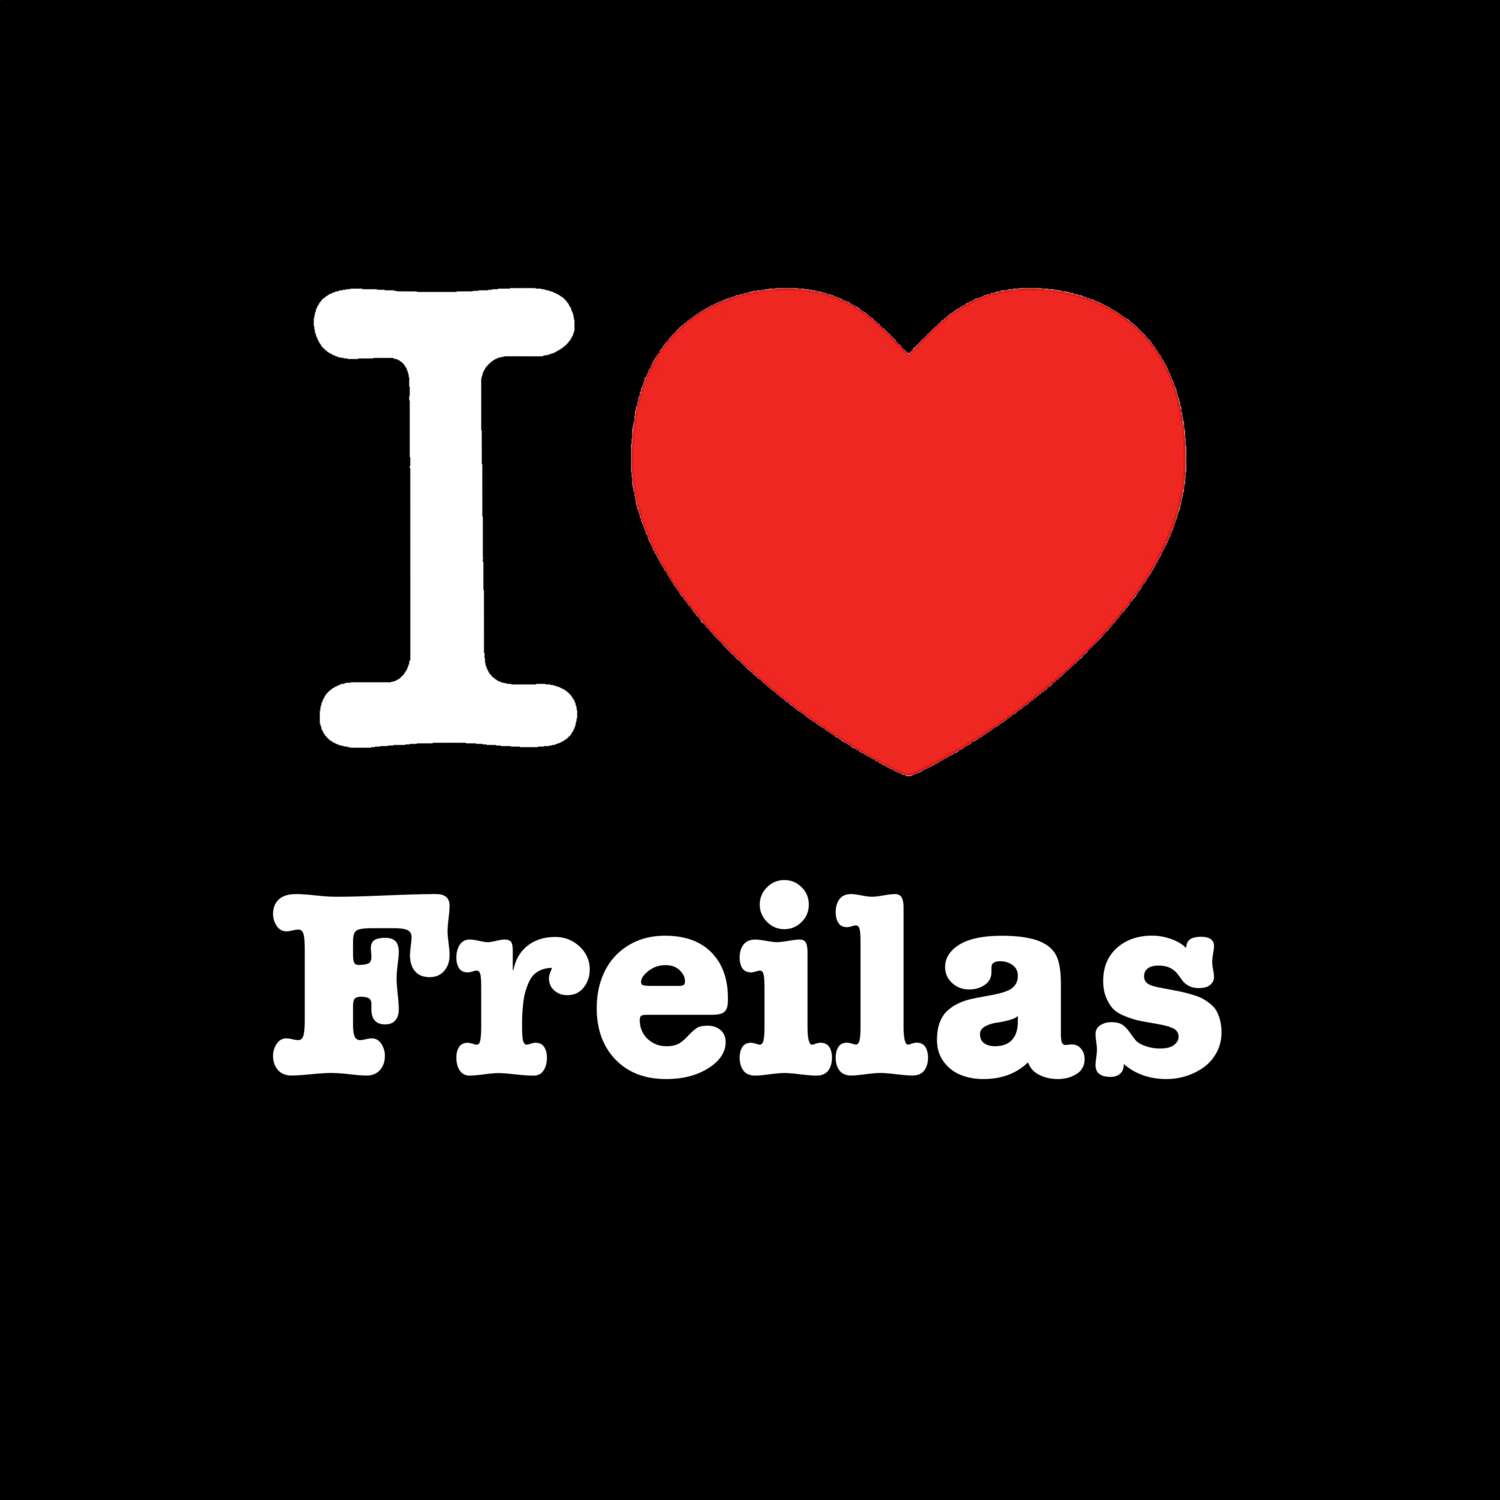 Freilas T-Shirt »I love«